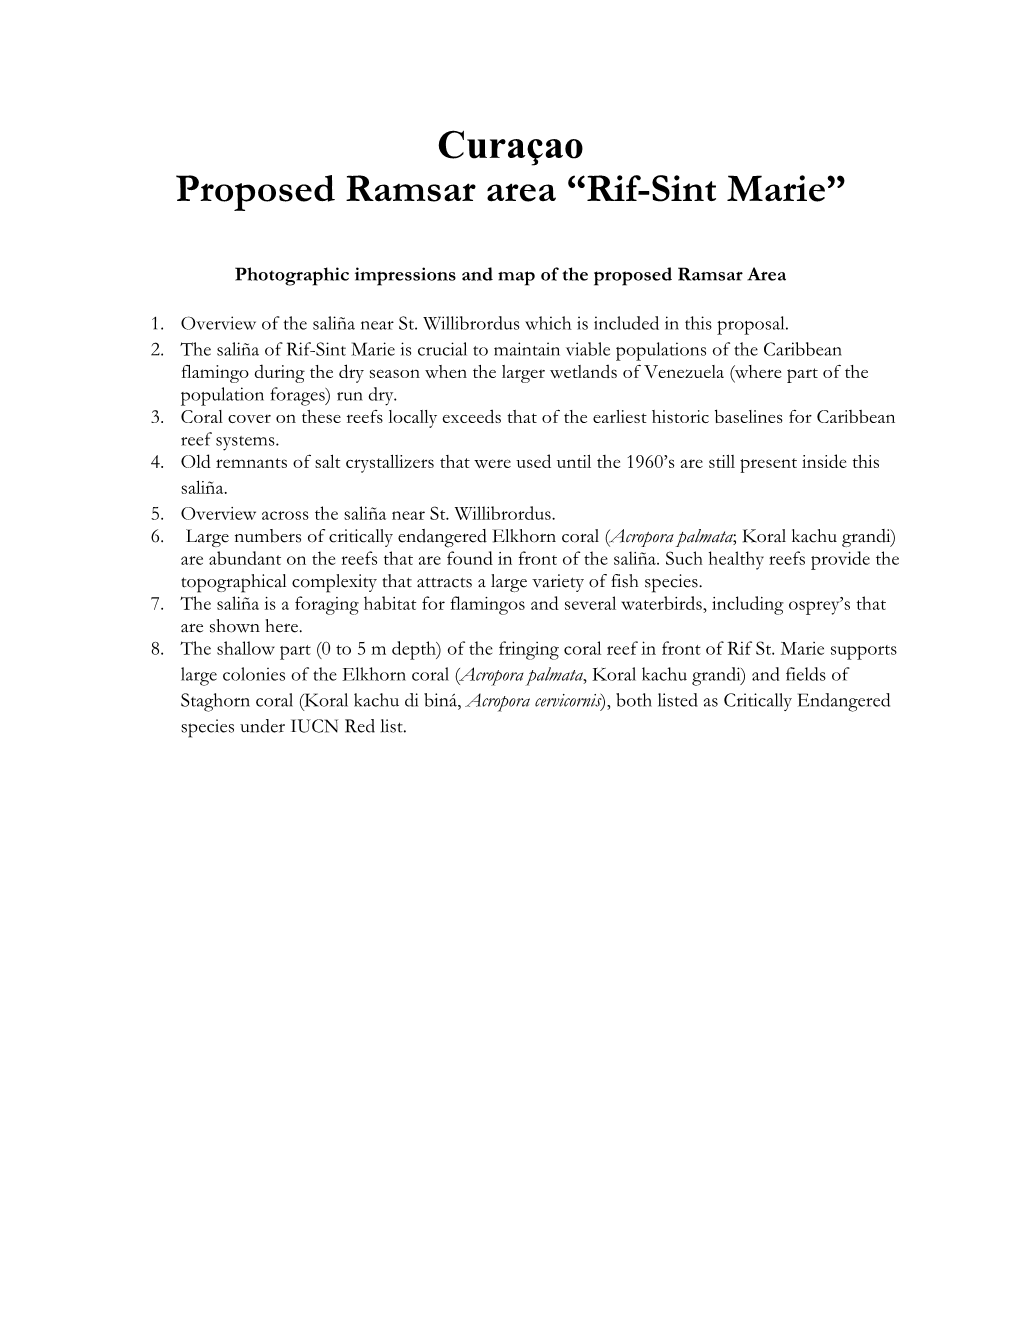 Curaçao Proposed Ramsar Area “Rif-Sint Marie”